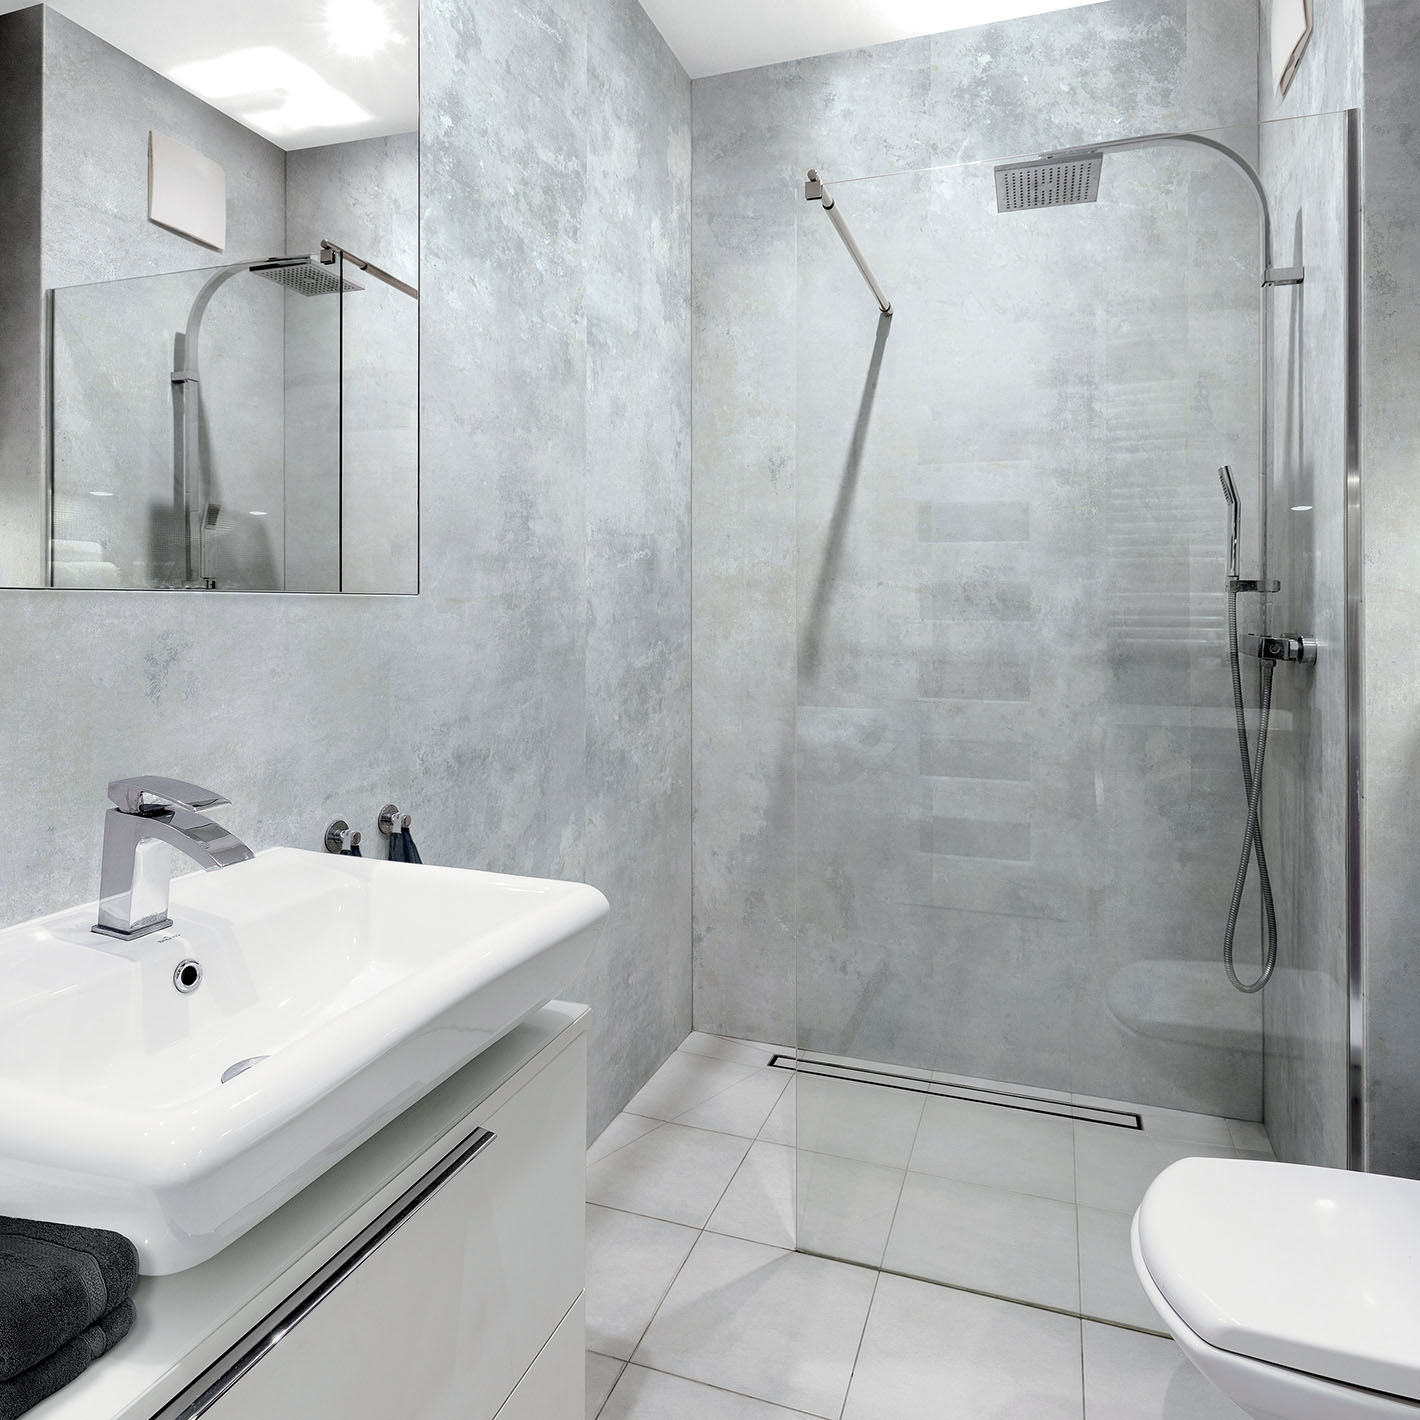 Un nouveau projet pour votre salle de bain - Grosfillex